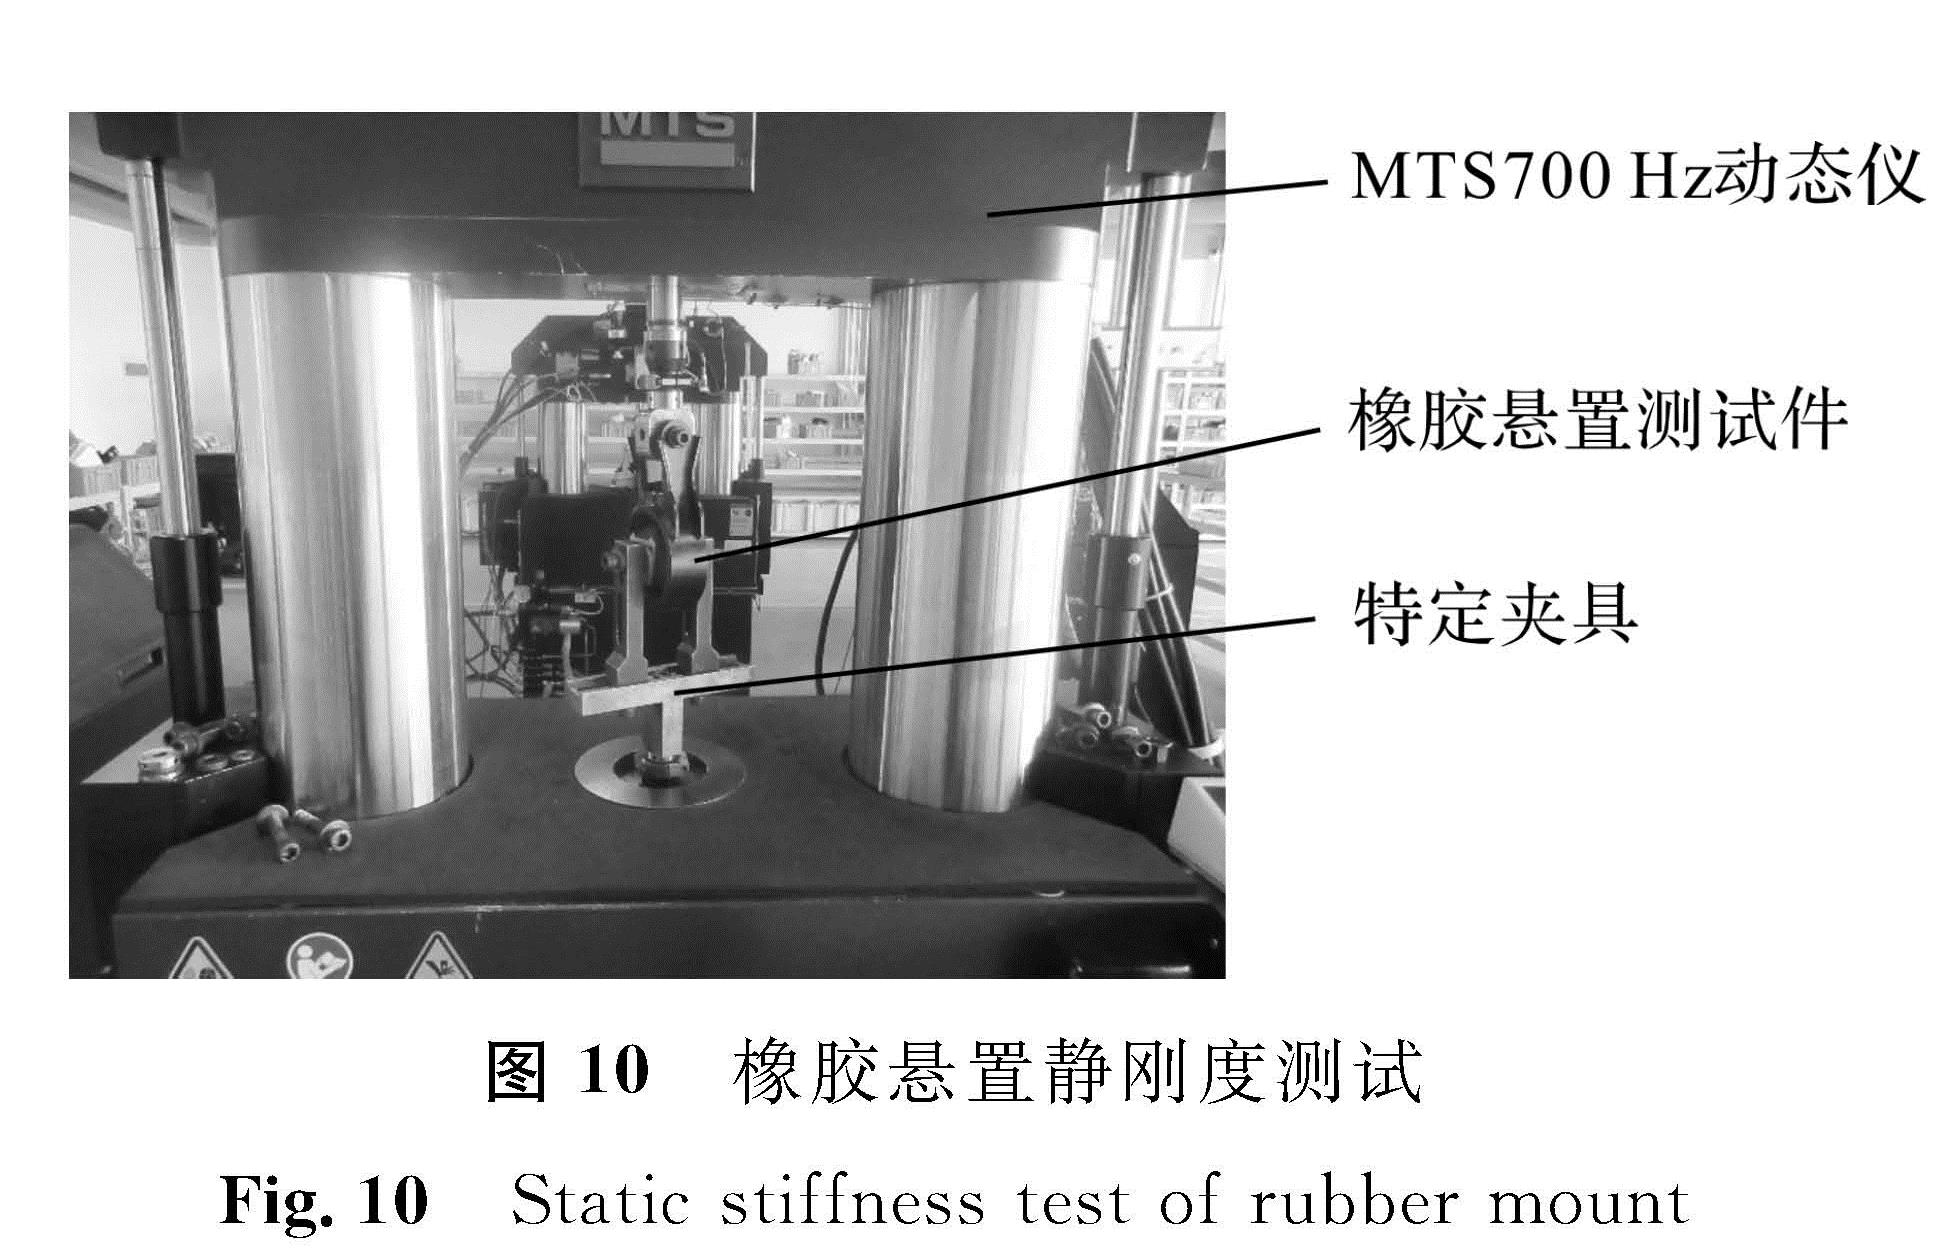 图 10 橡胶悬置静刚度测试<br/>Fig.10 Static stiffness test of rubber mount